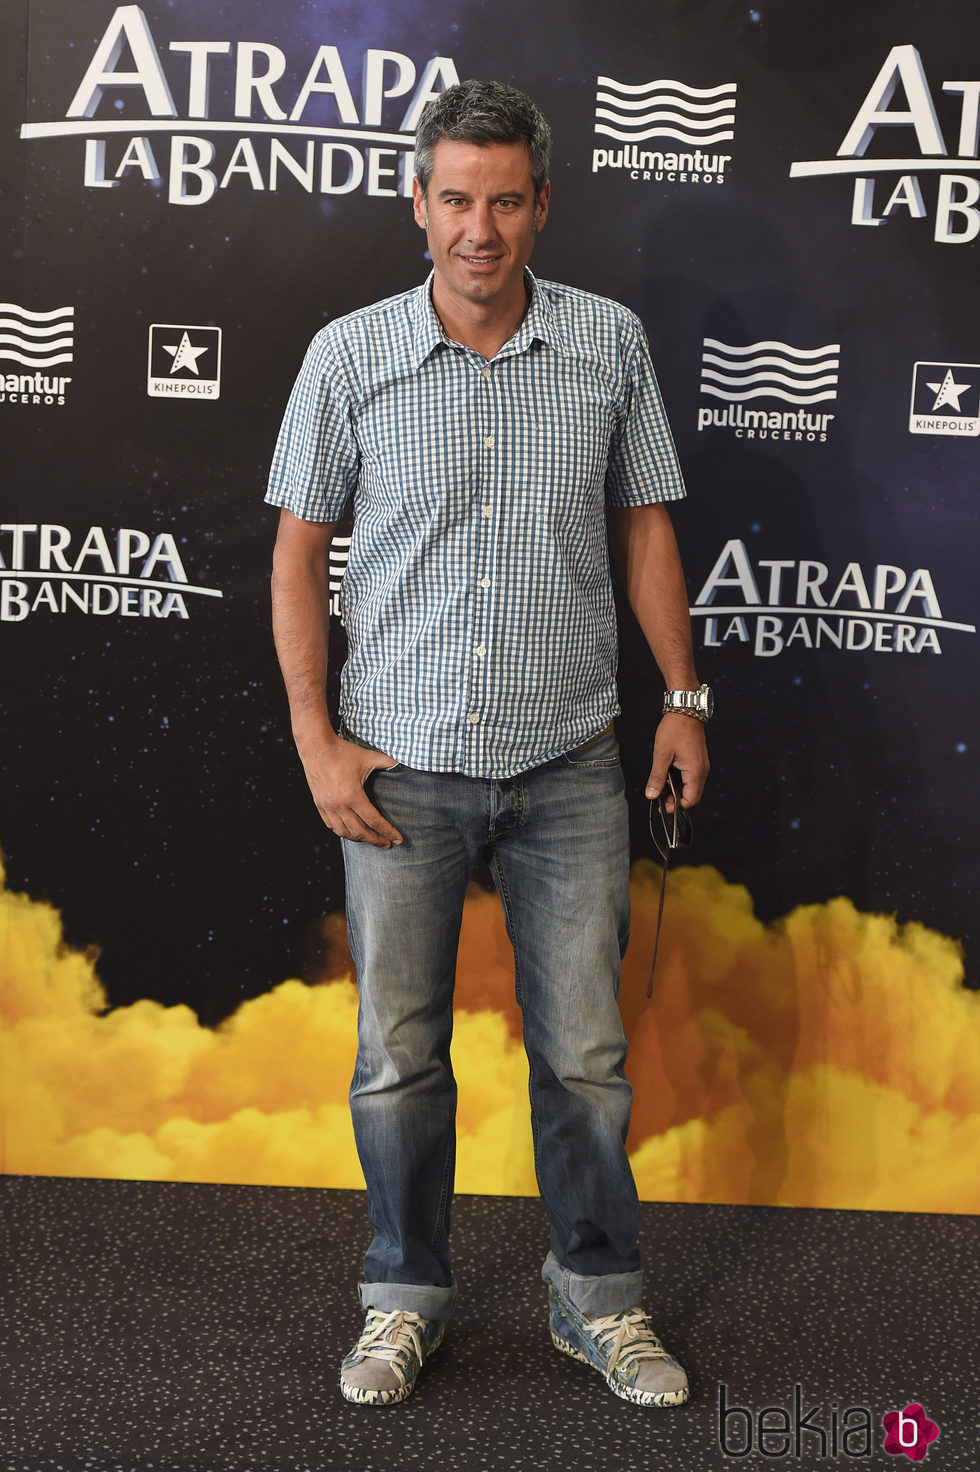 Nico Abad en el estreno de 'Atrapa la bandera' en Madrid